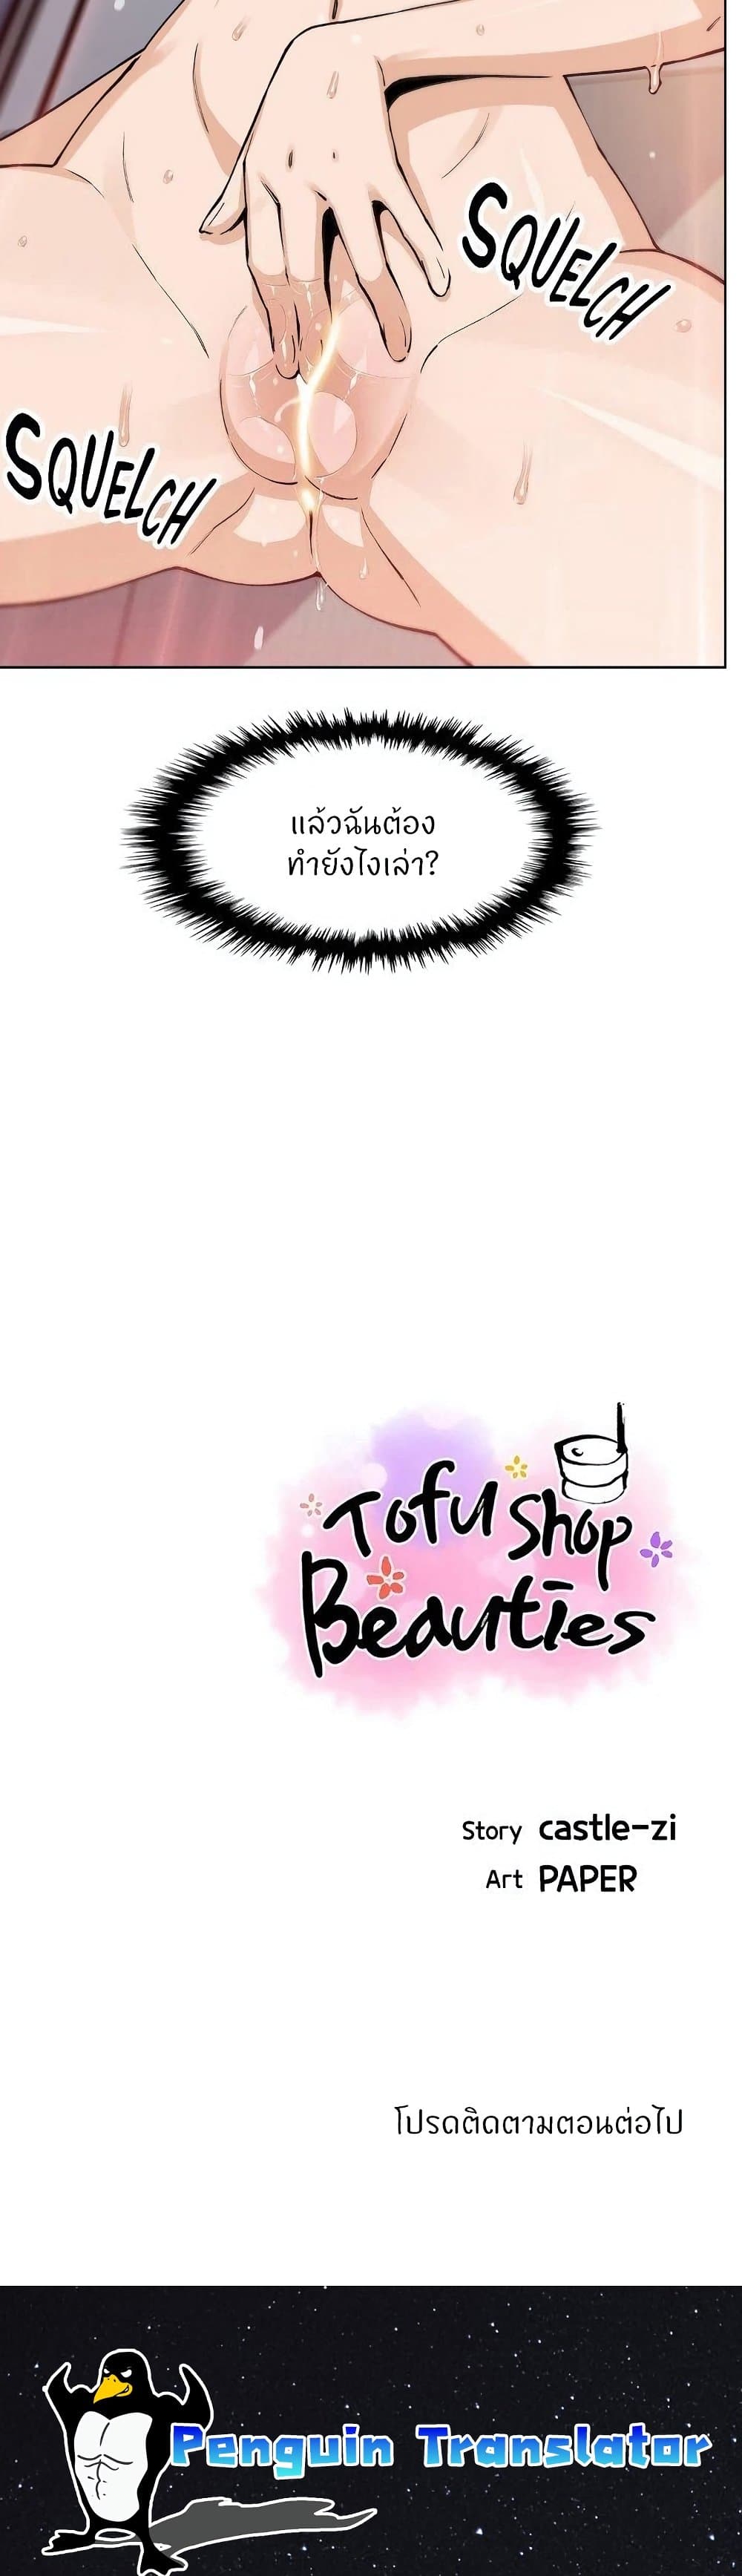 Tofu Shop Beauties 43-43